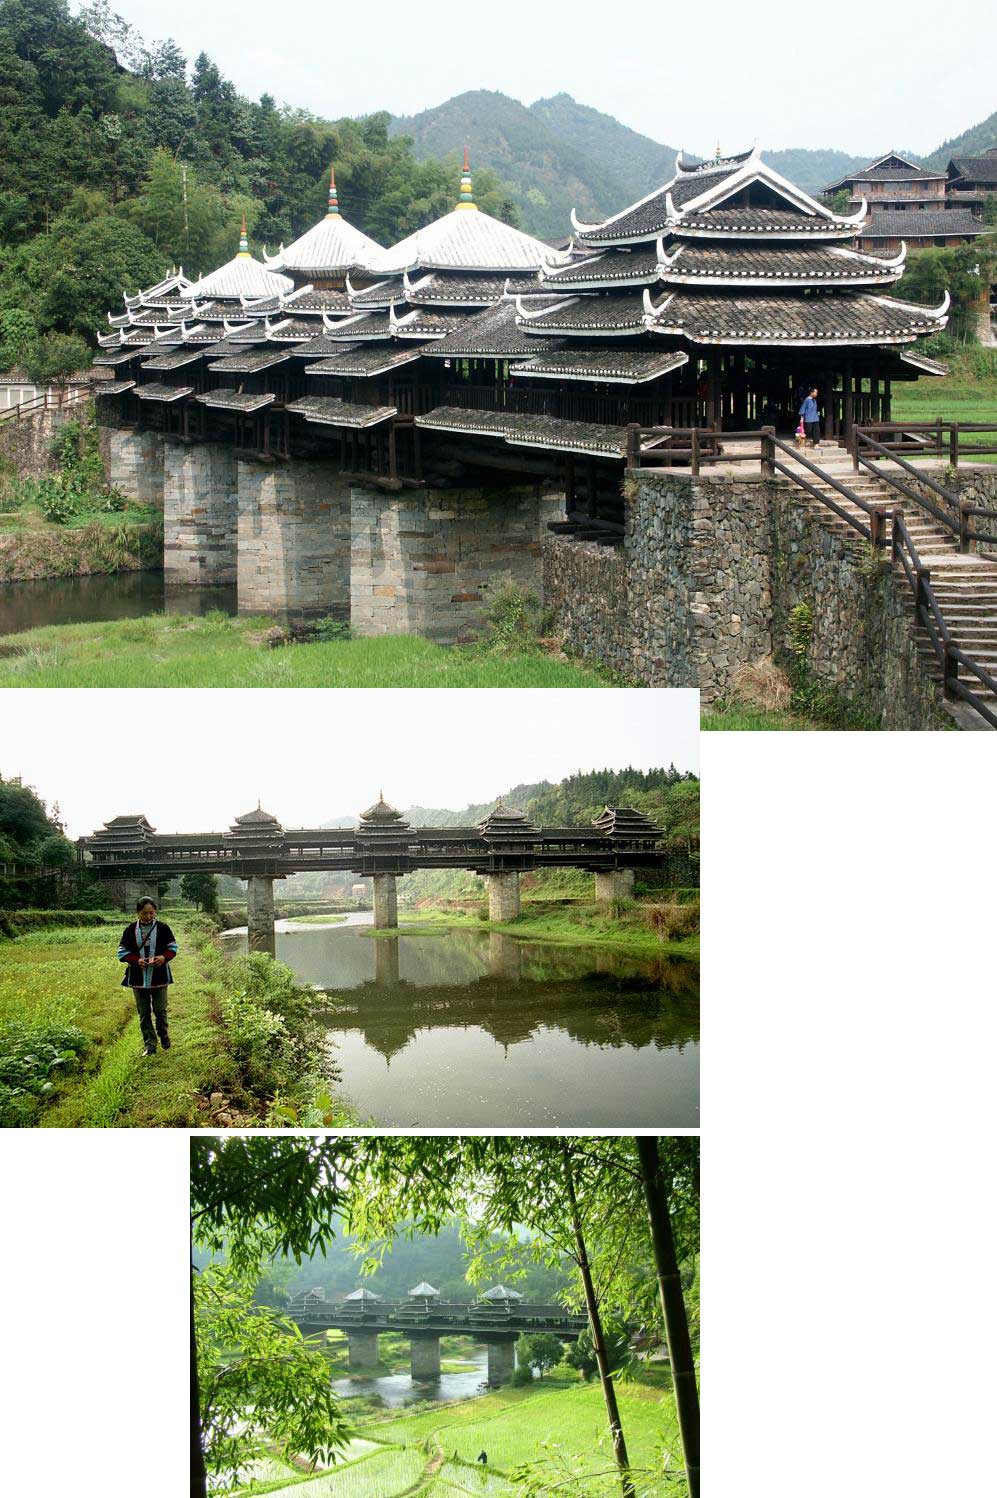 Dong bridge